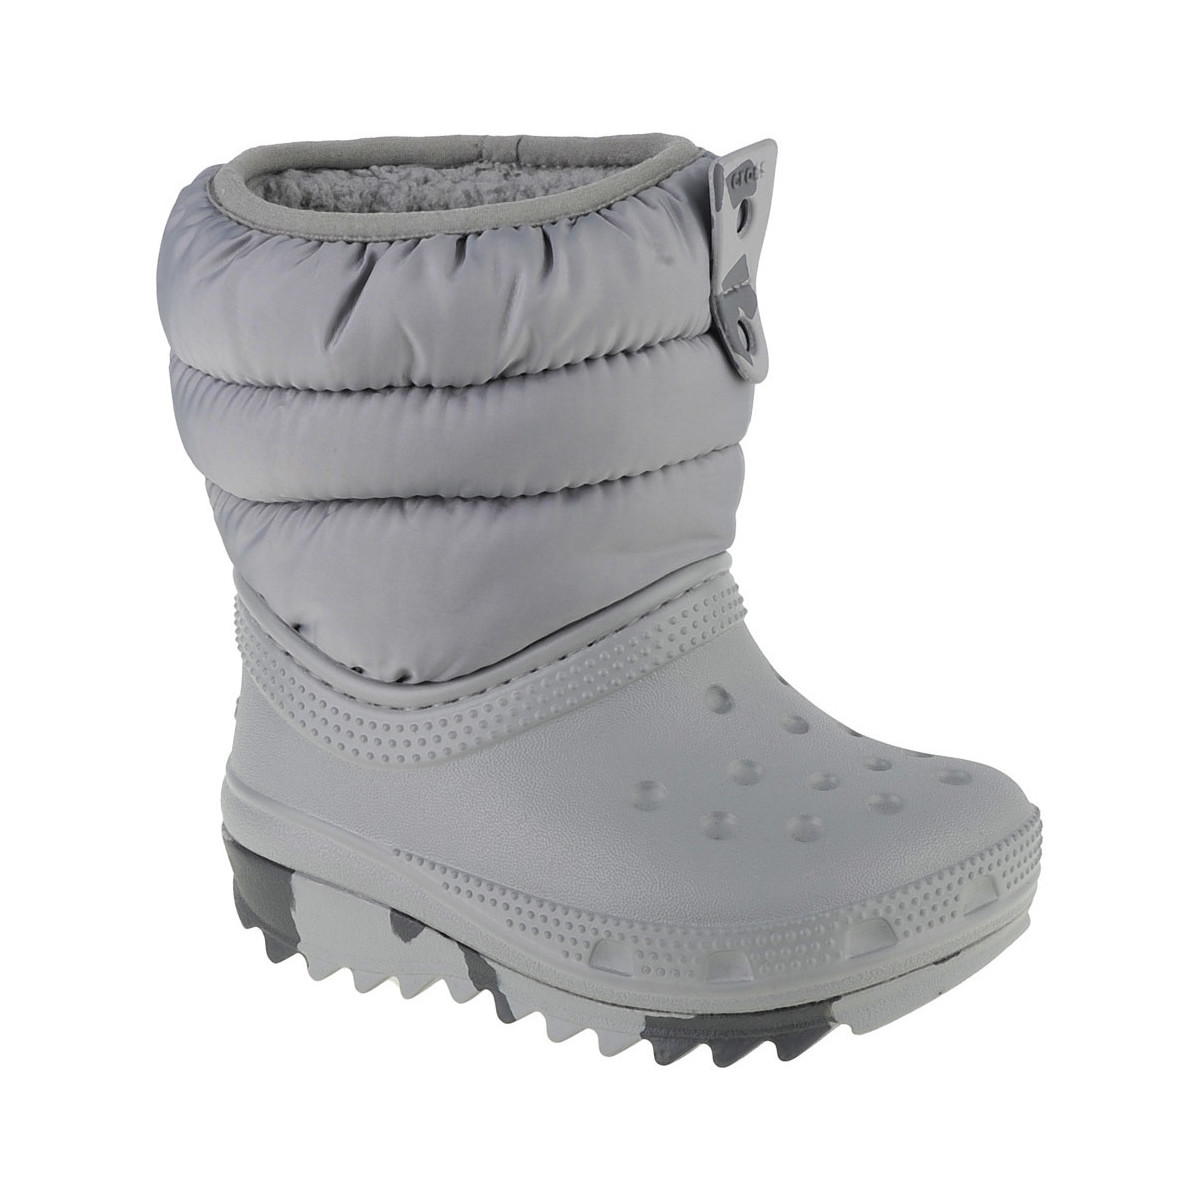 Zapatos Niño Botas de nieve Crocs Classic Neo Puff Boot Toddler Gris